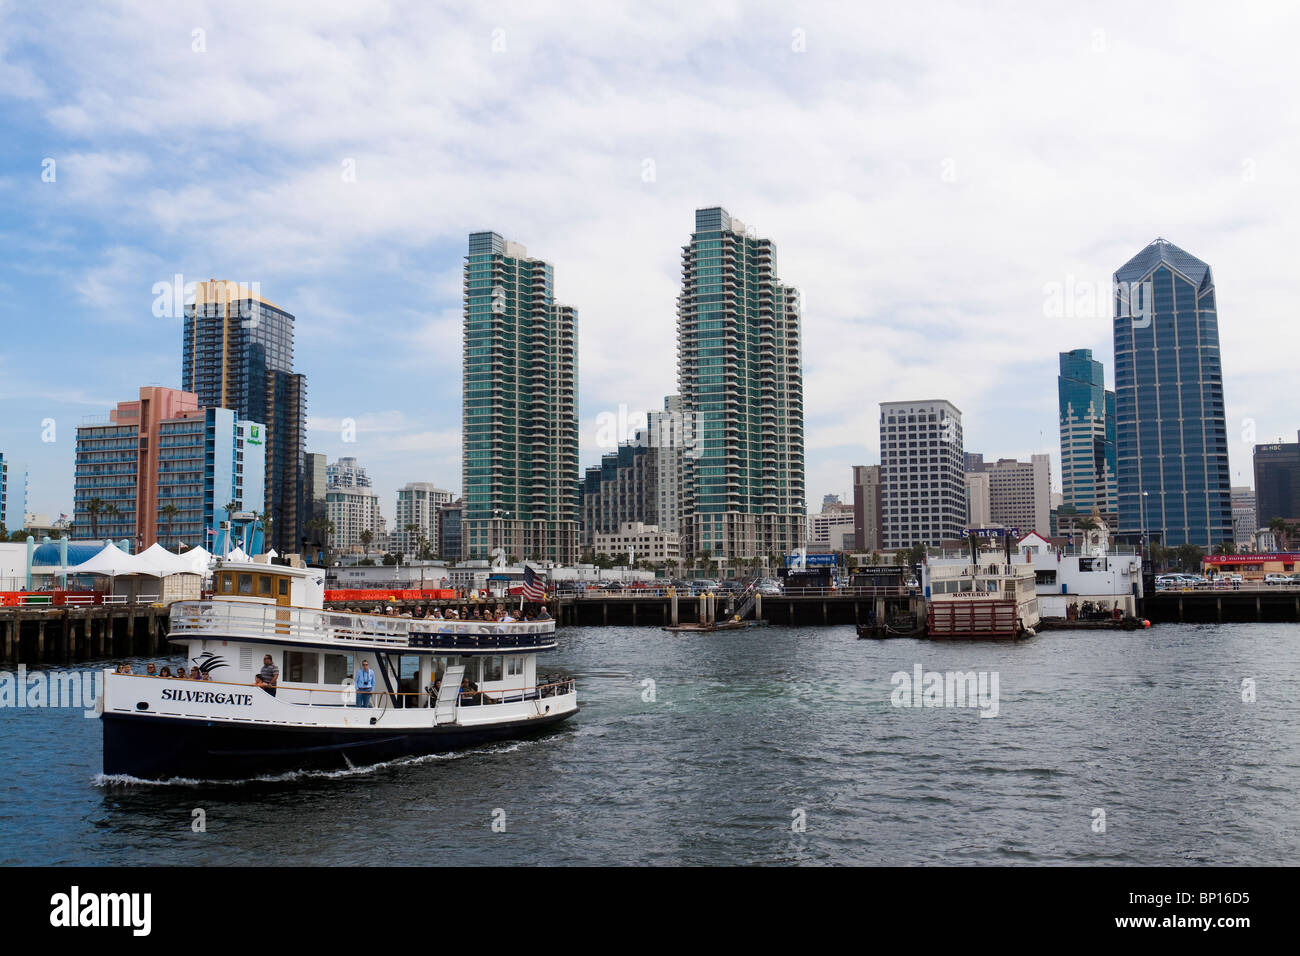 Tourenboot mit Touristen das Dock verlassen und zum Sightseeing an der San Diego Bay in Kalifornien unterwegs Stockfoto